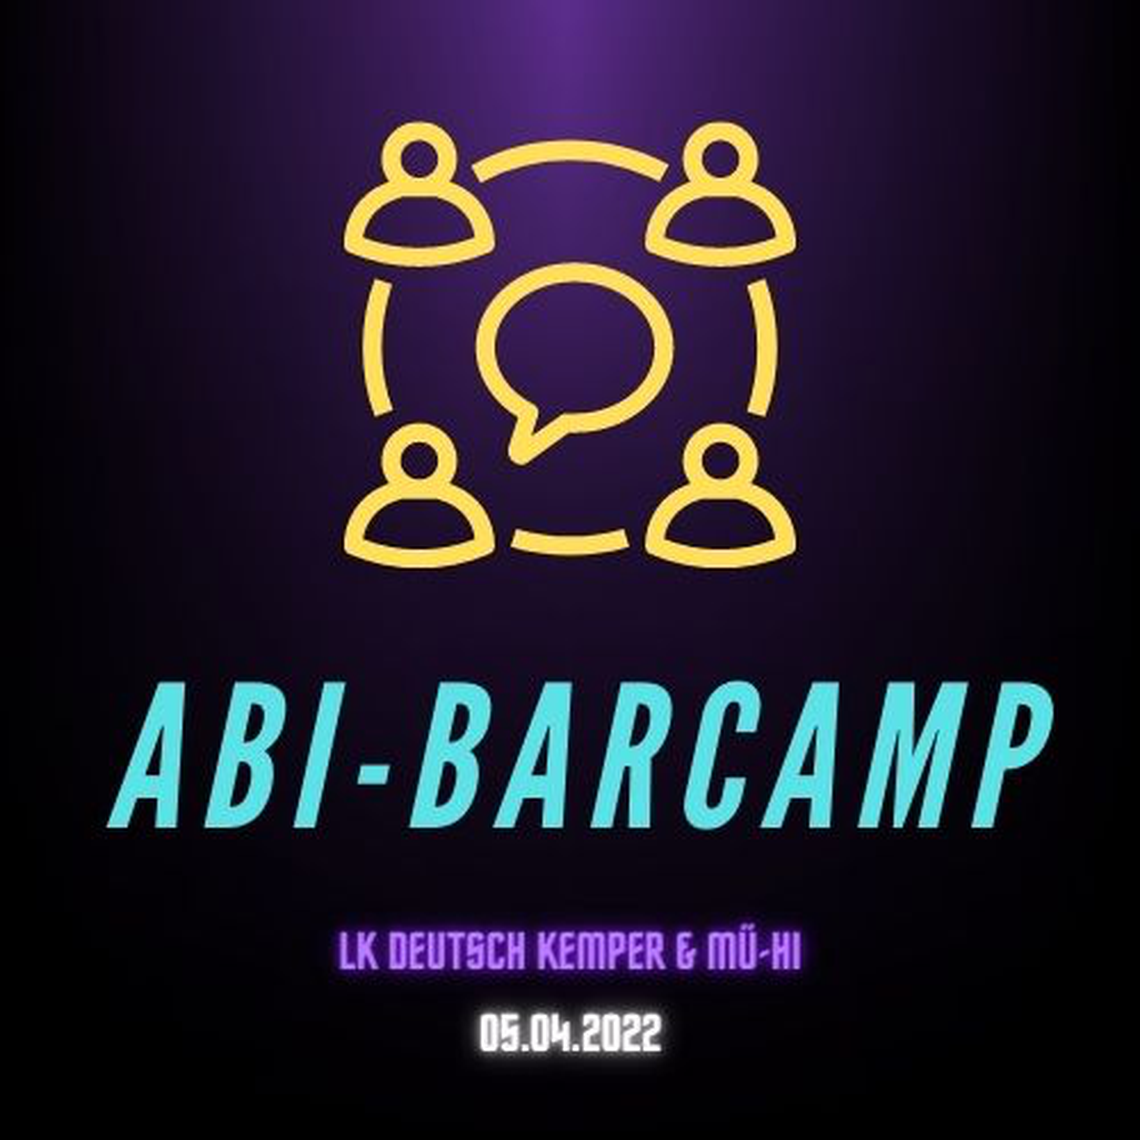 Logo Abi-Barcamp LK Deutsch Kemper und Mü-Hi